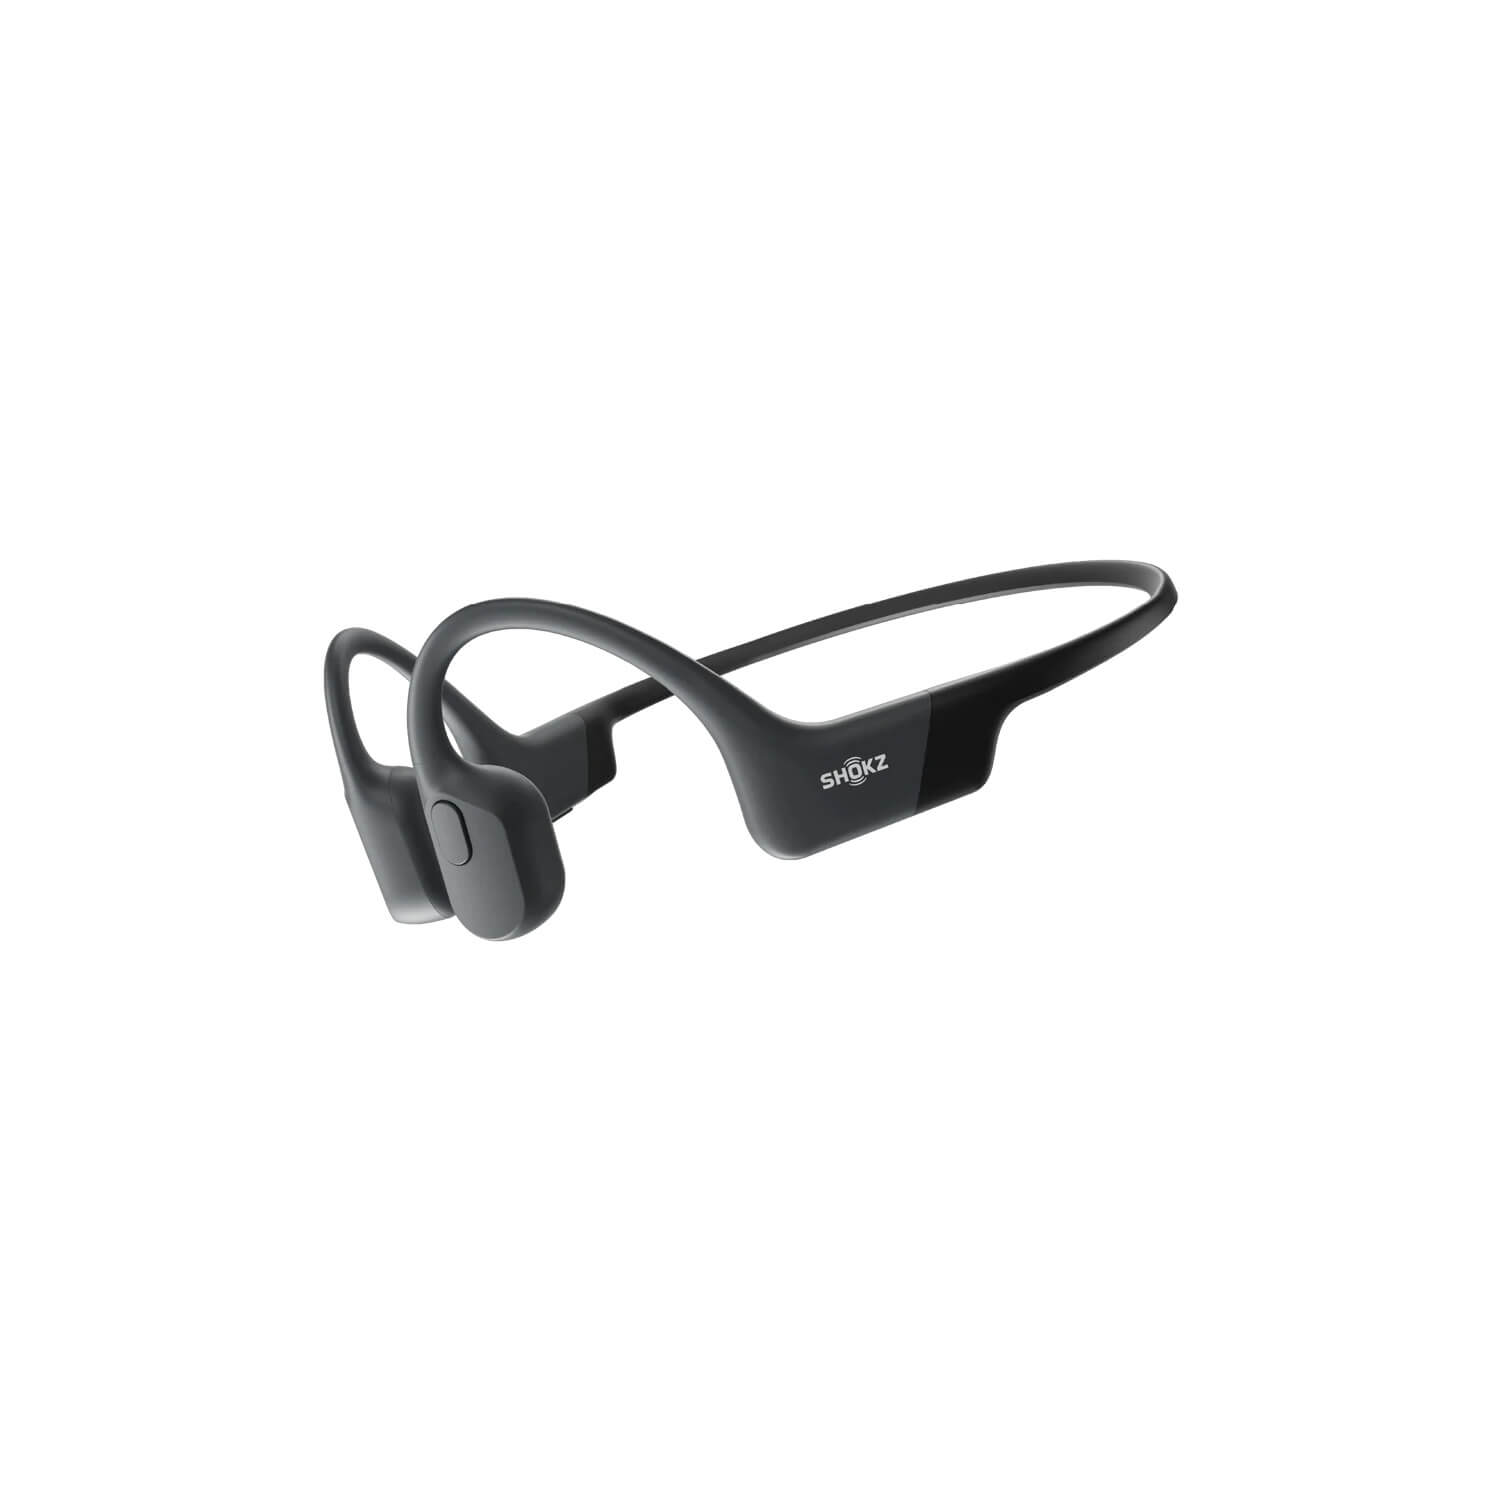 Shokz S803BK OpenRun Open-Ear Bone Conduction Wireless Headphones in Cosmic Black from D2N